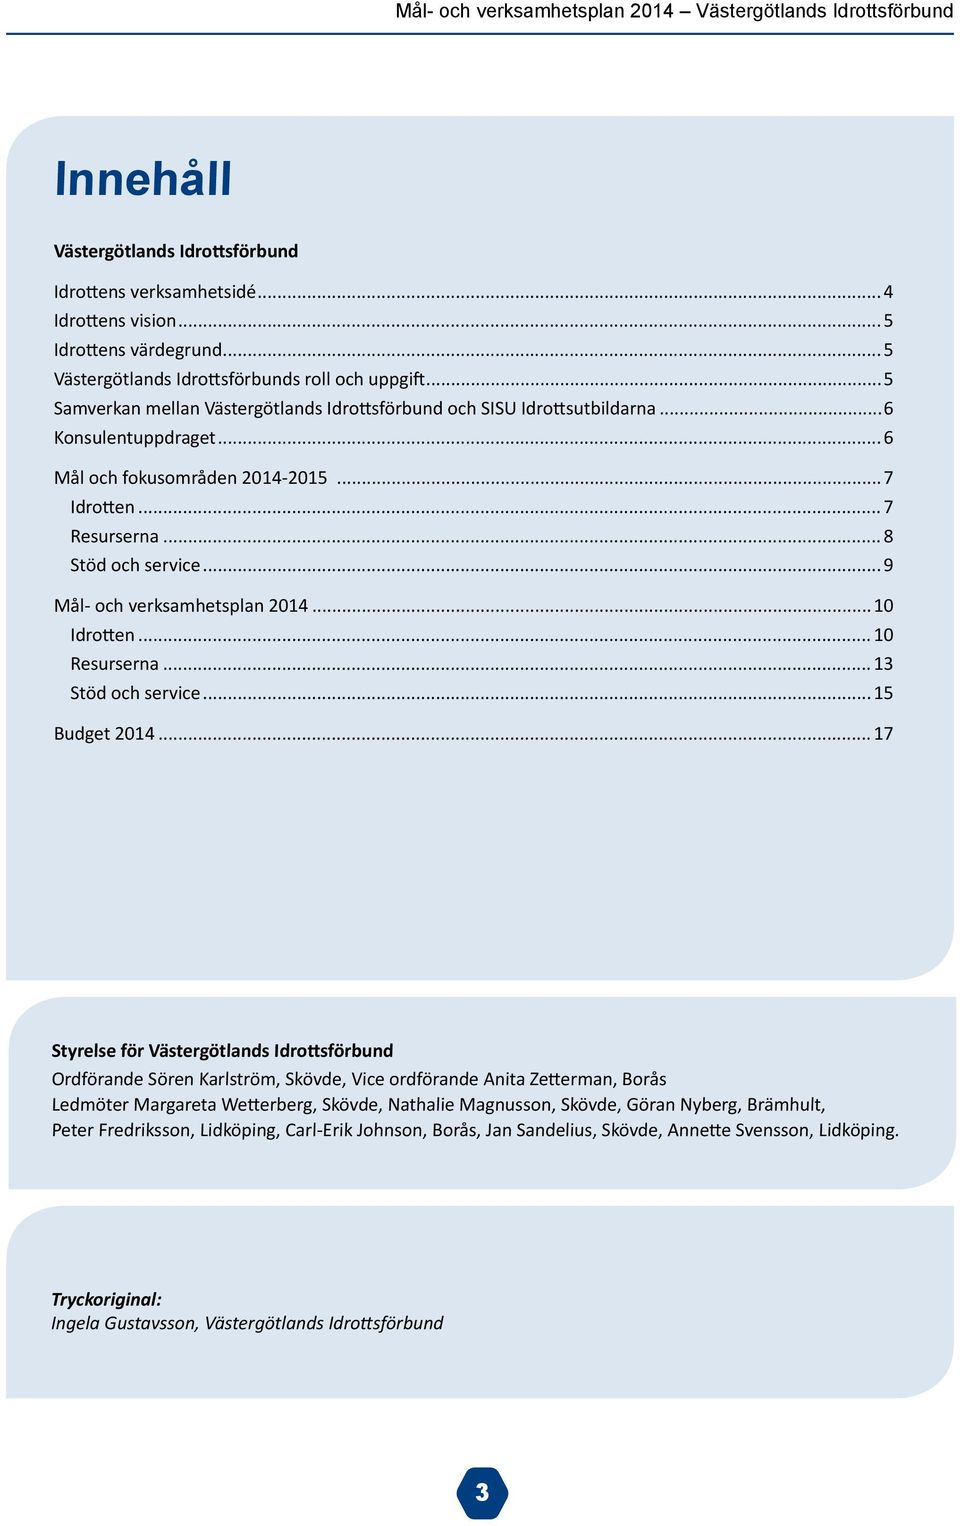 ..9 Mål- och verksamhetsplan 2014...10 Idrotten...10 Resurserna...13 Stöd och service...15 Budget 2014.